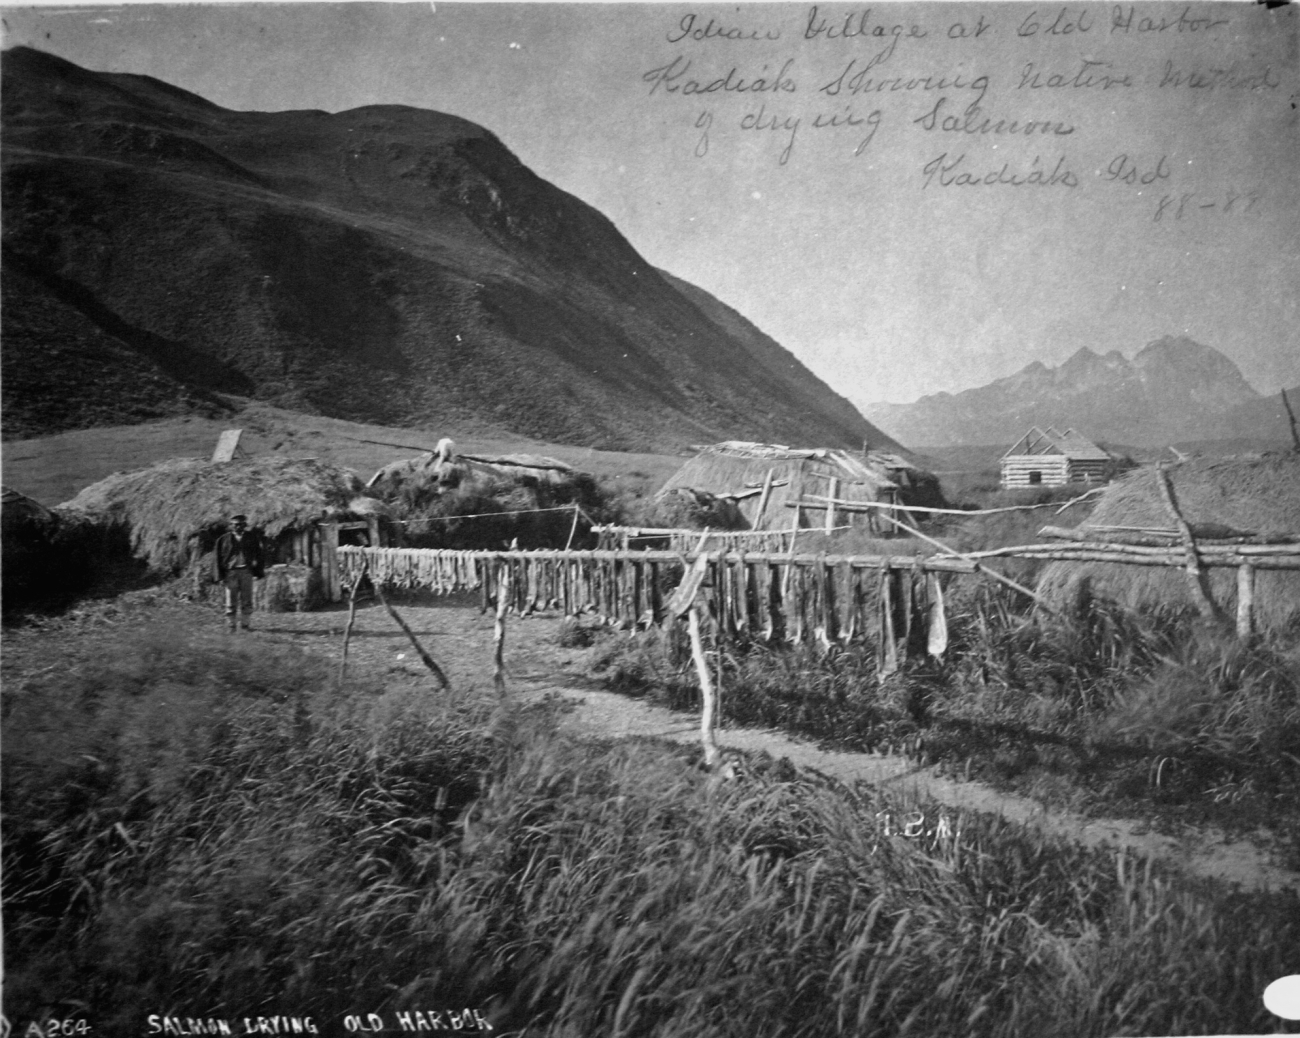 Indian village at Old Harbor, Kodiak showing native method ofdrying salmon, Kodiak Island, AK, 1888-89